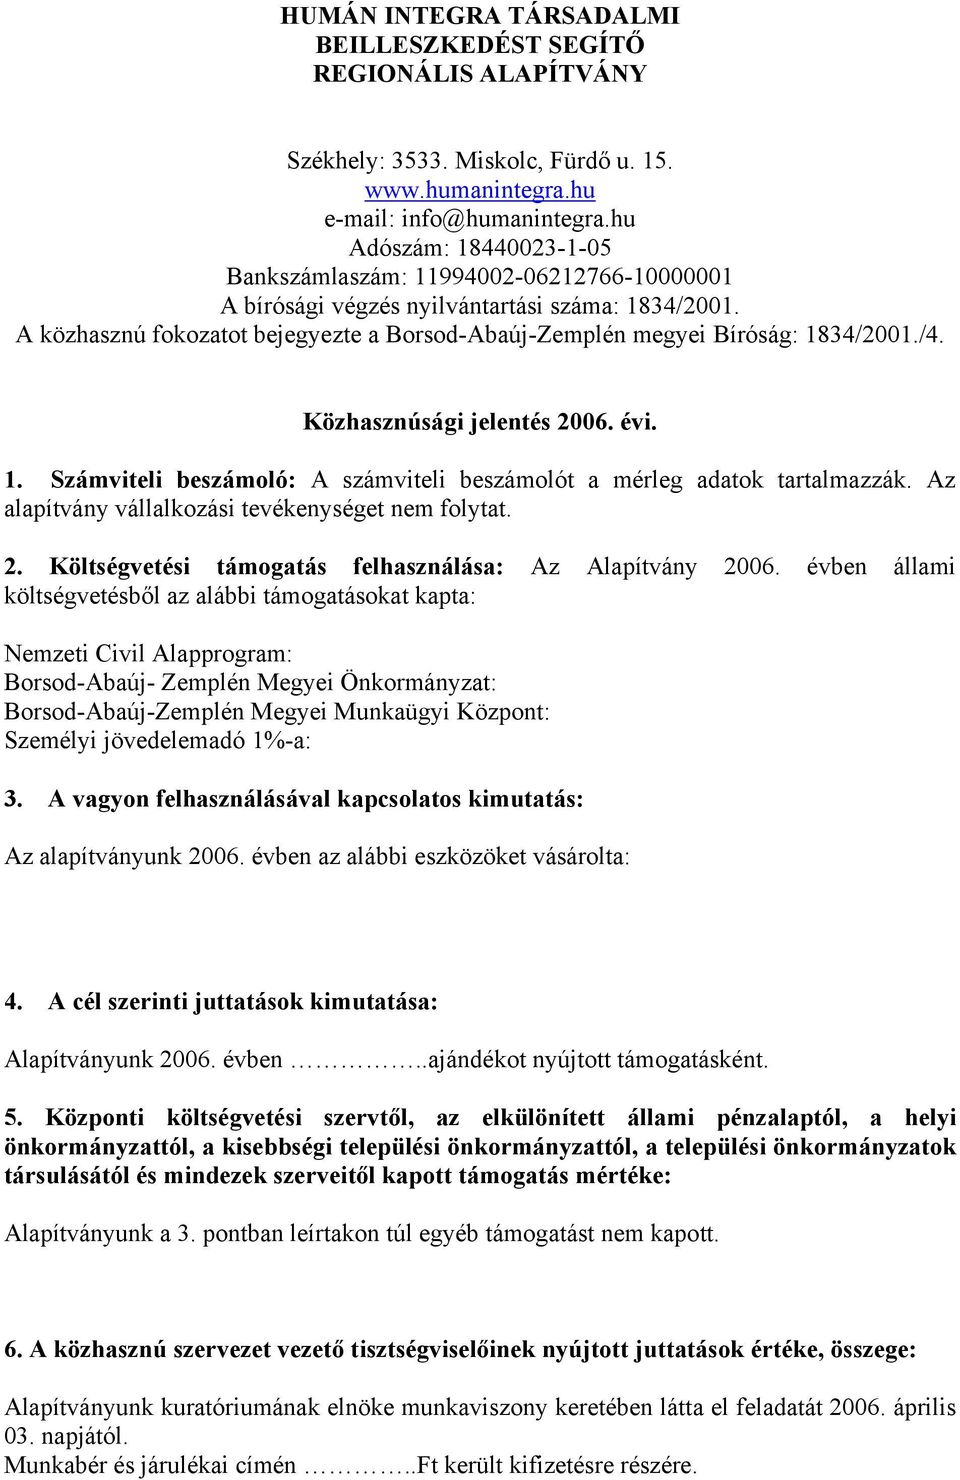 A közhasznú fokozatot bejegyezte a Borsod-Abaúj-Zemplén megyei Bíróság: 1834/2001./4. Közhasznúsági jelentés 2006. évi. 1. Számviteli beszámoló: A számviteli beszámolót a mérleg adatok tartalmazzák.